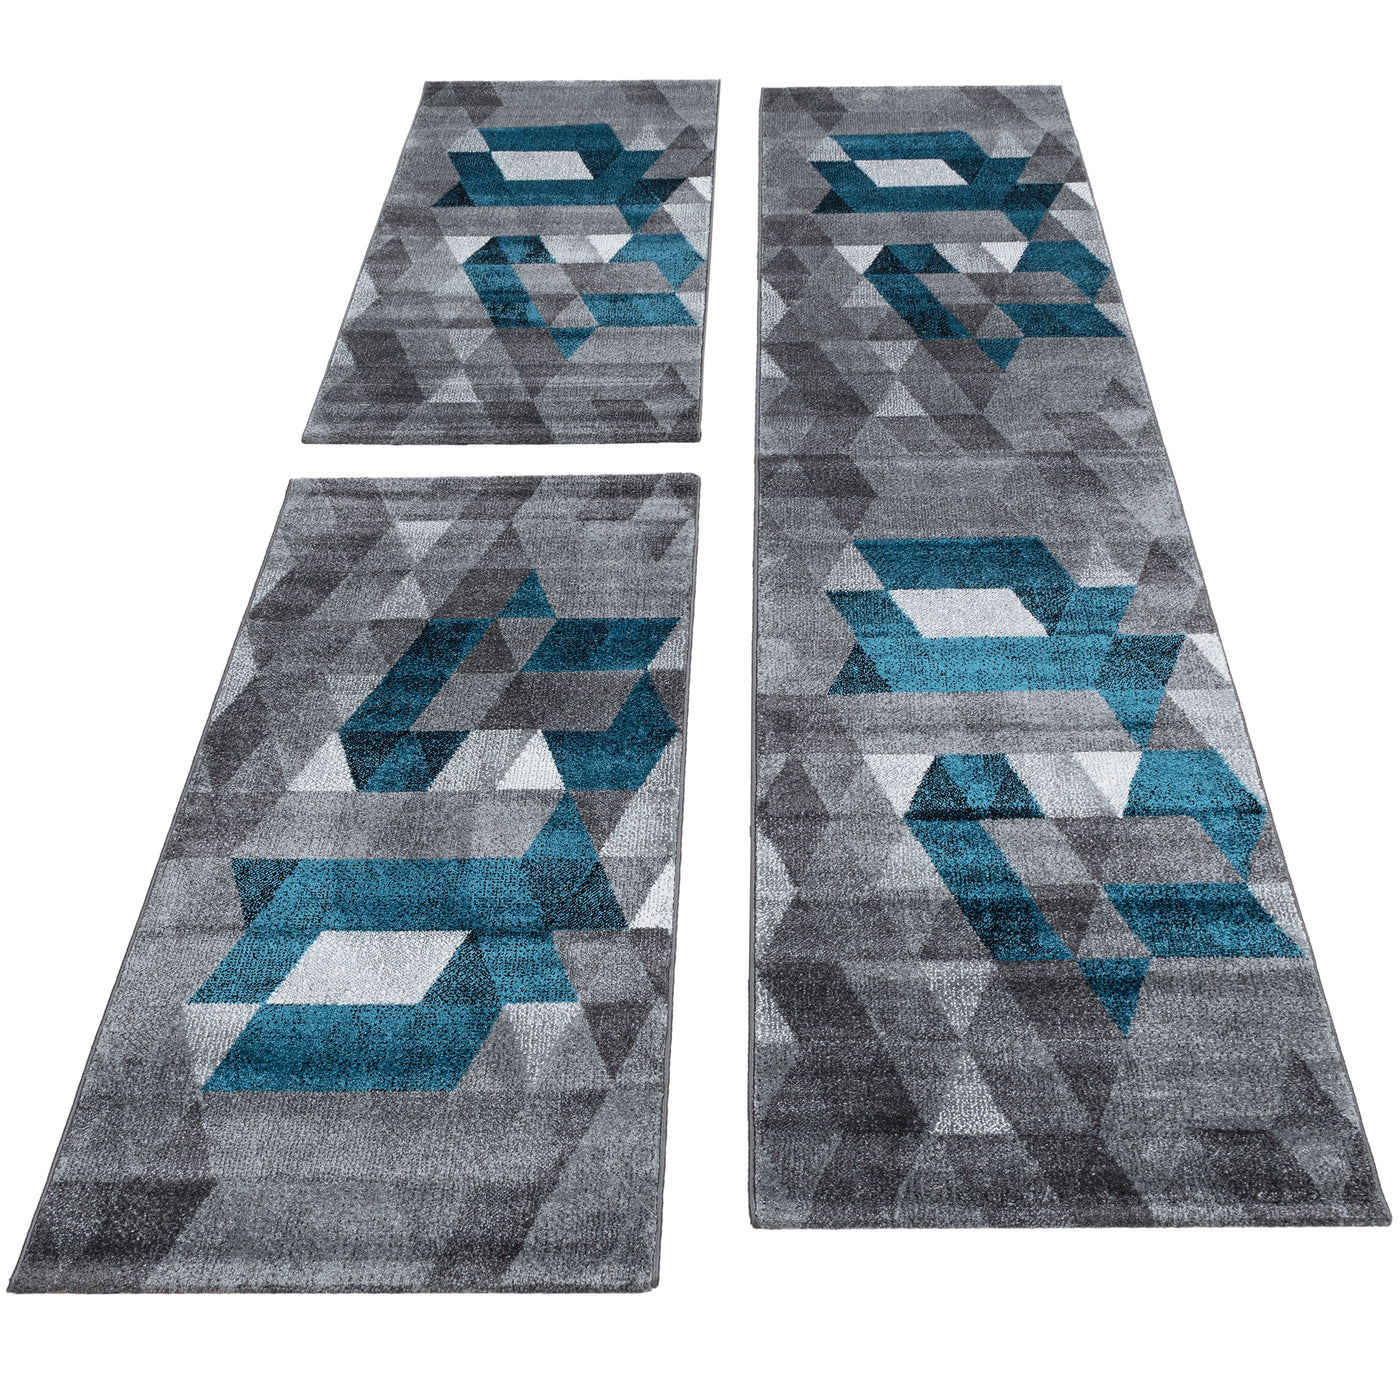 Bettumrandung Teppich abstrakt Kariert Dreieck 3 teilig Läufer Set Schlafzimmer Flur Grau Türkis meliert